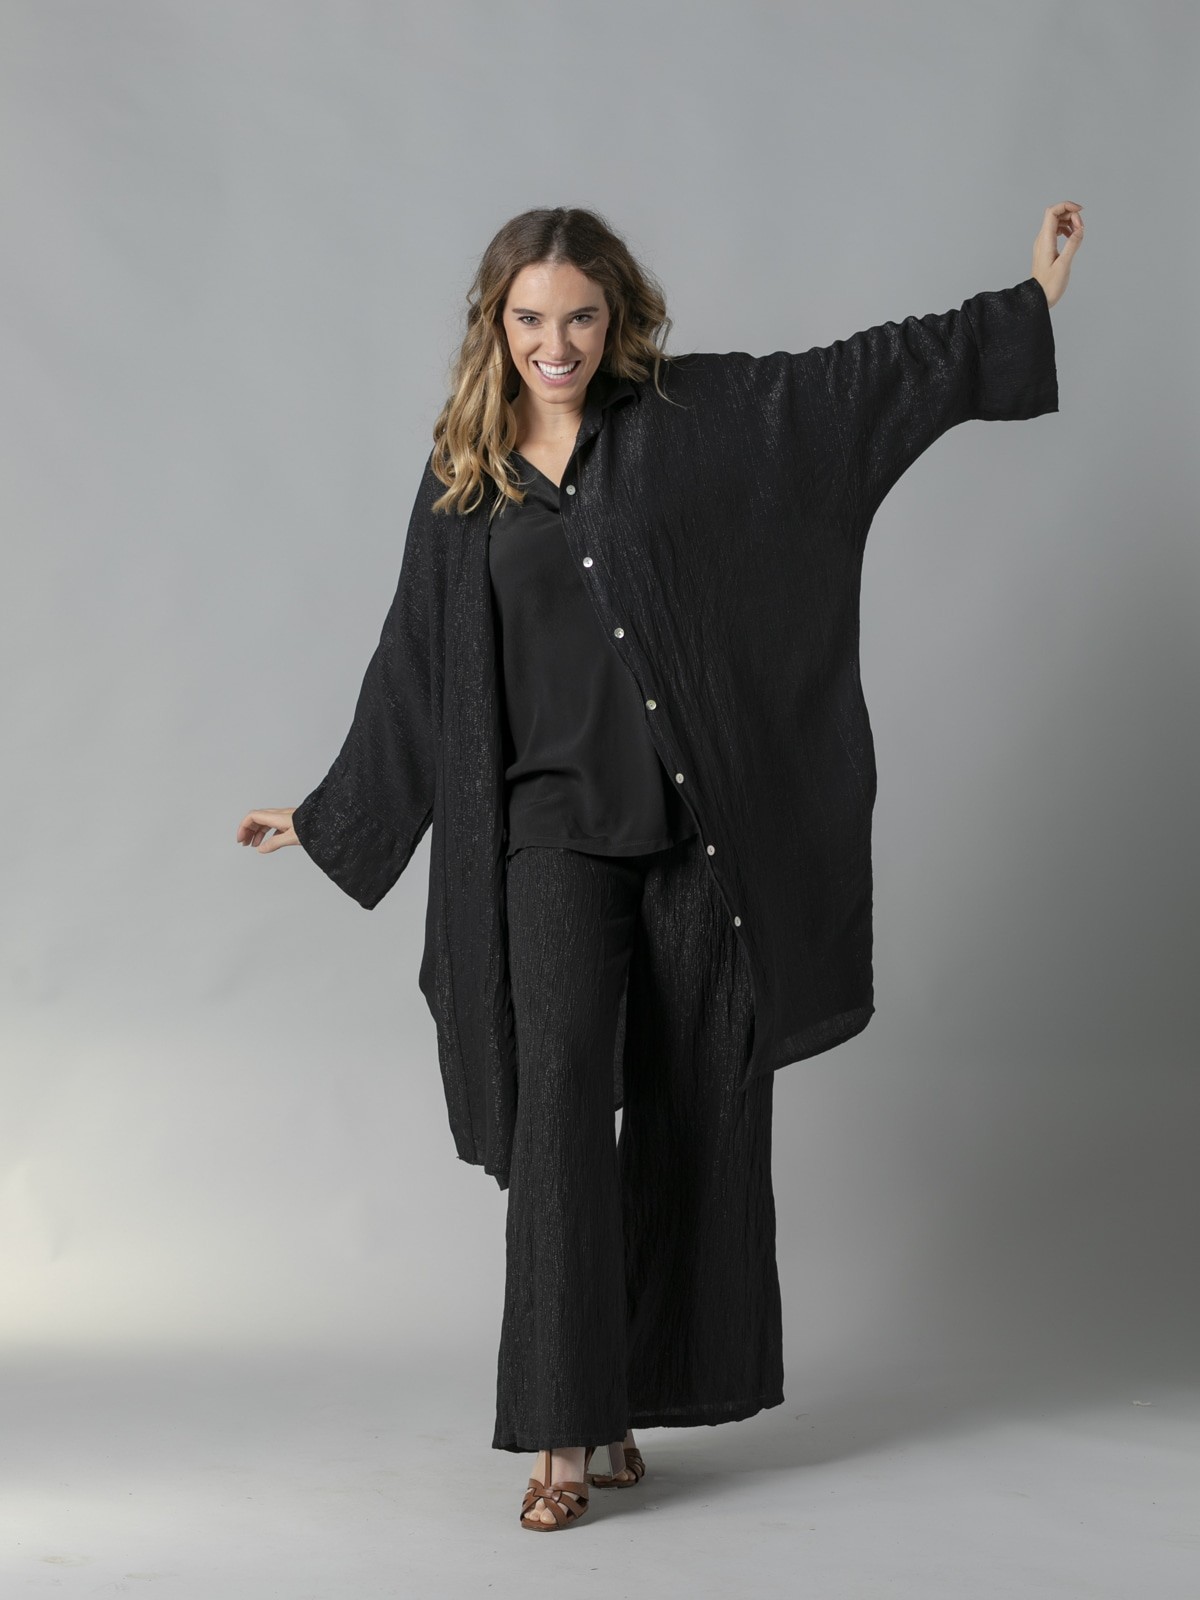 Camisola oversize tejido trendy Negro